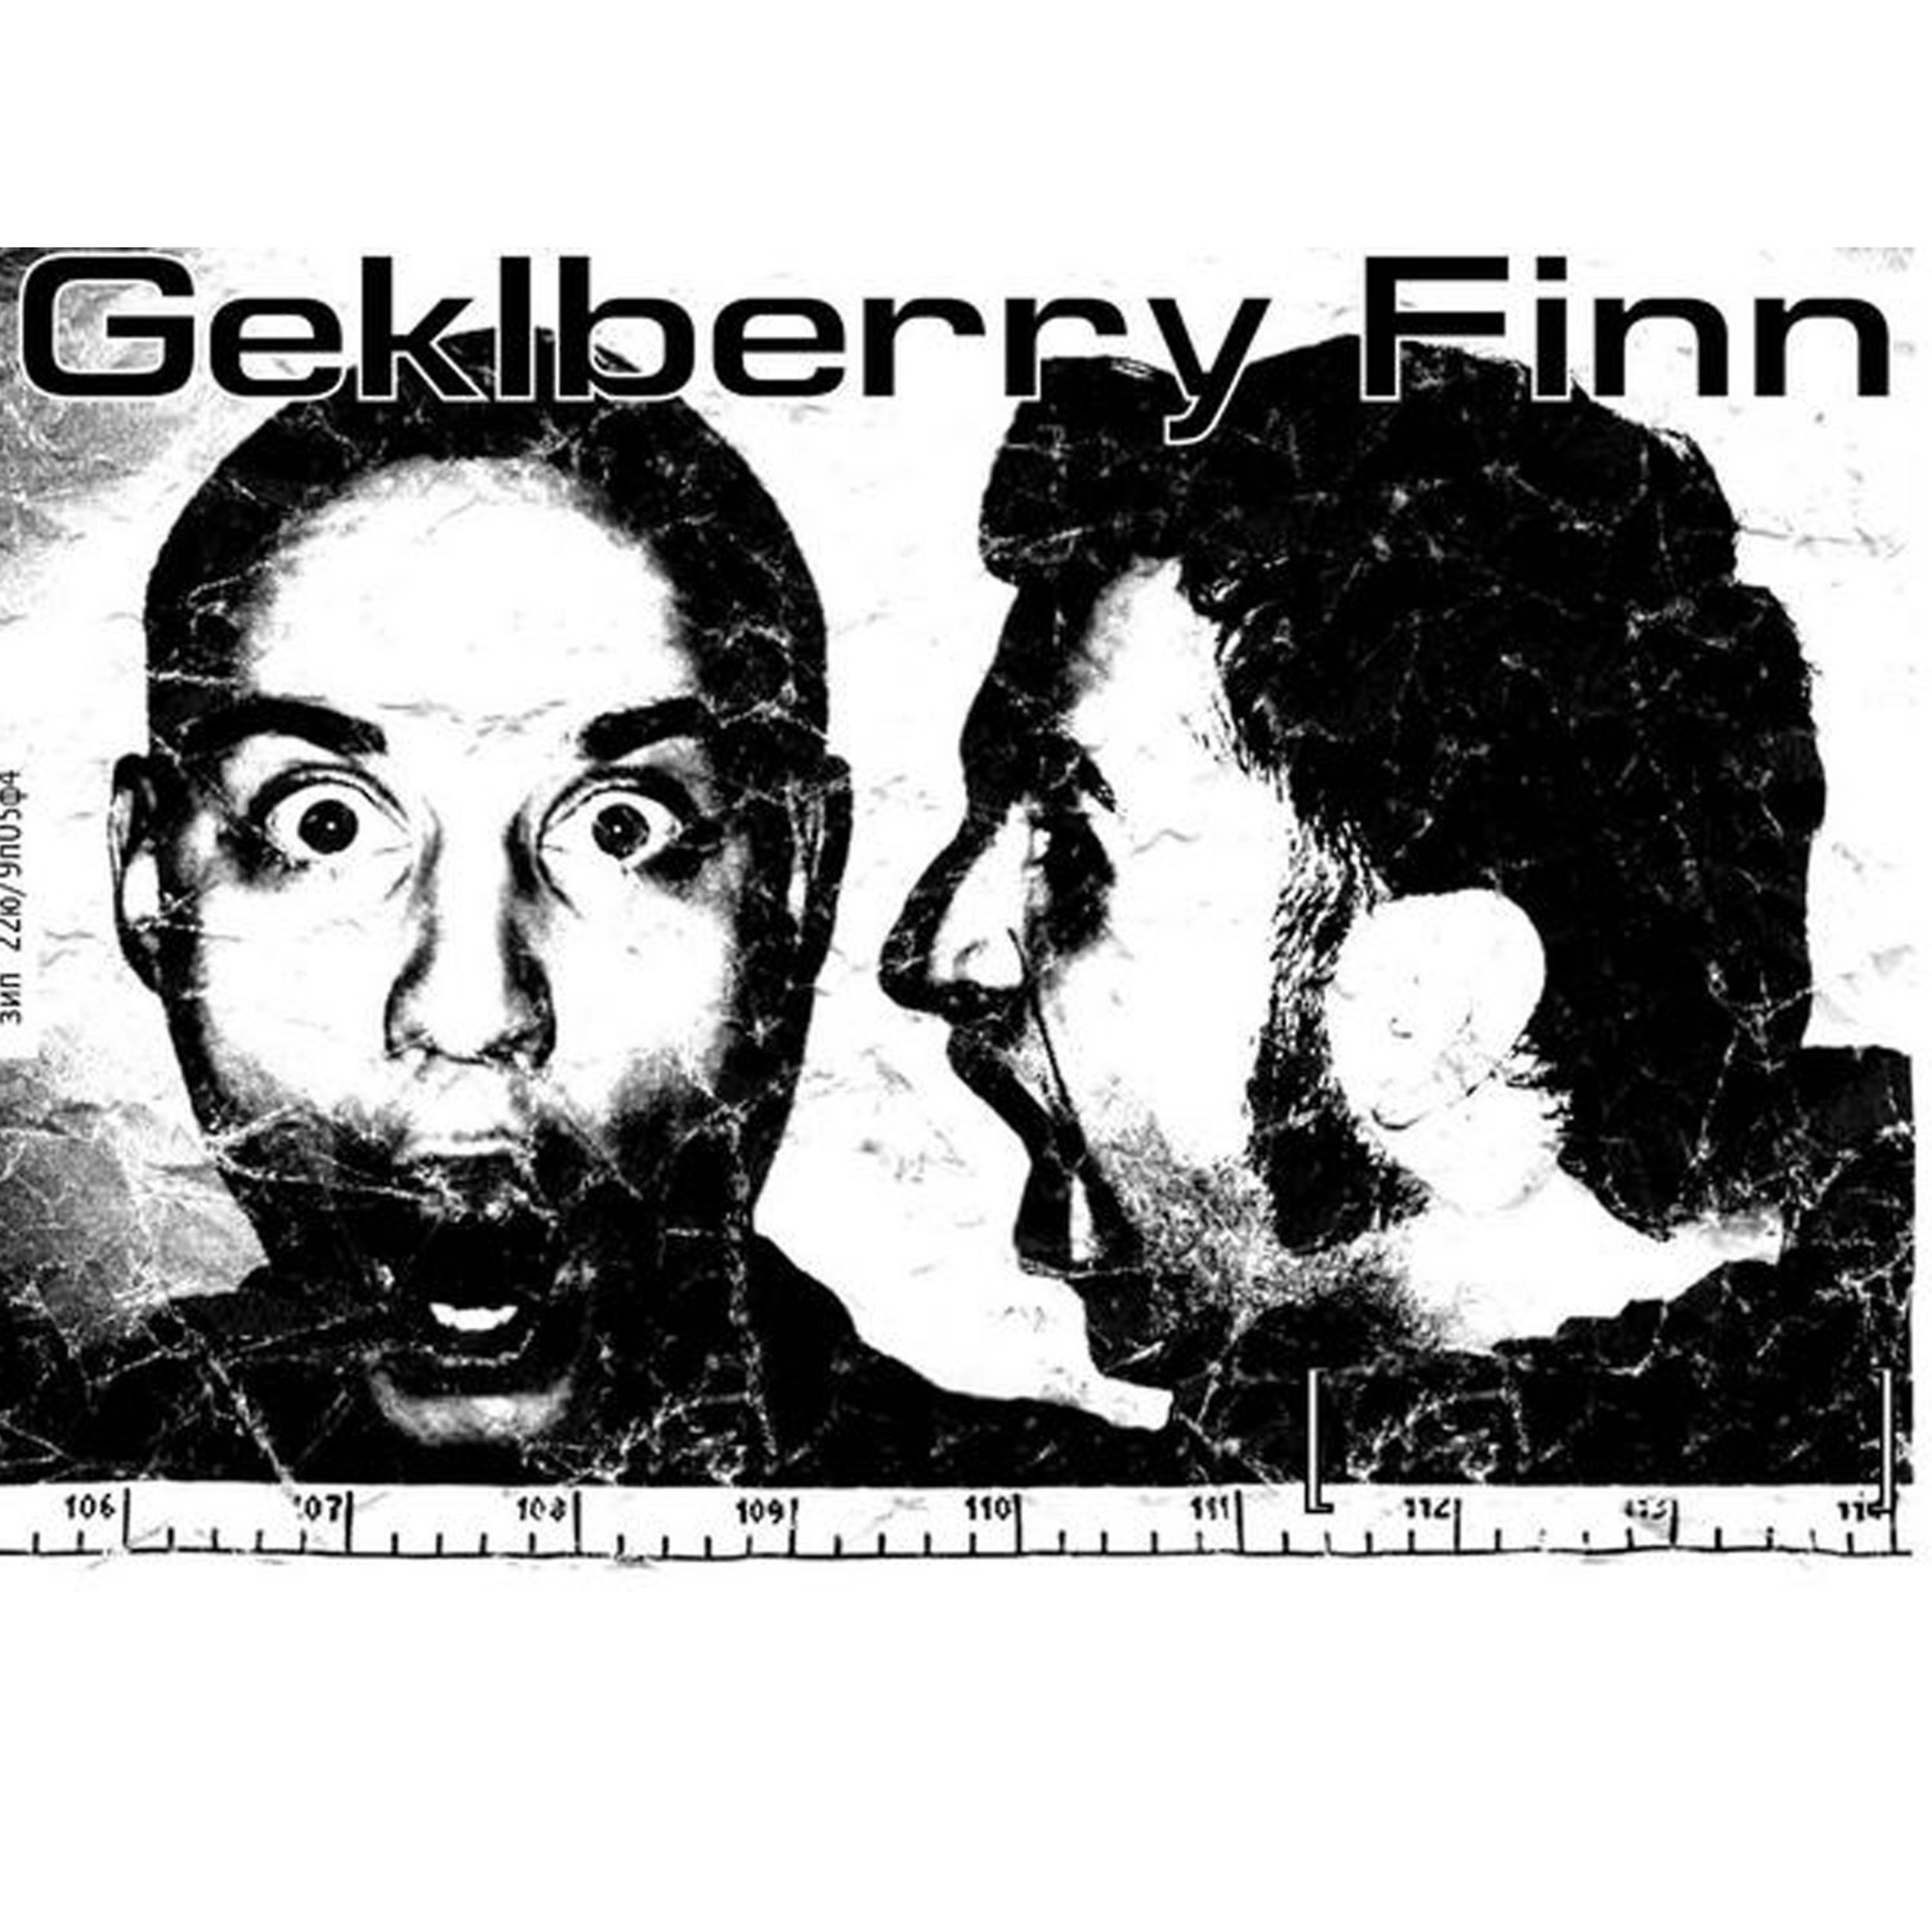 Постер альбома Geklberry Finn  "The useles Samurai".